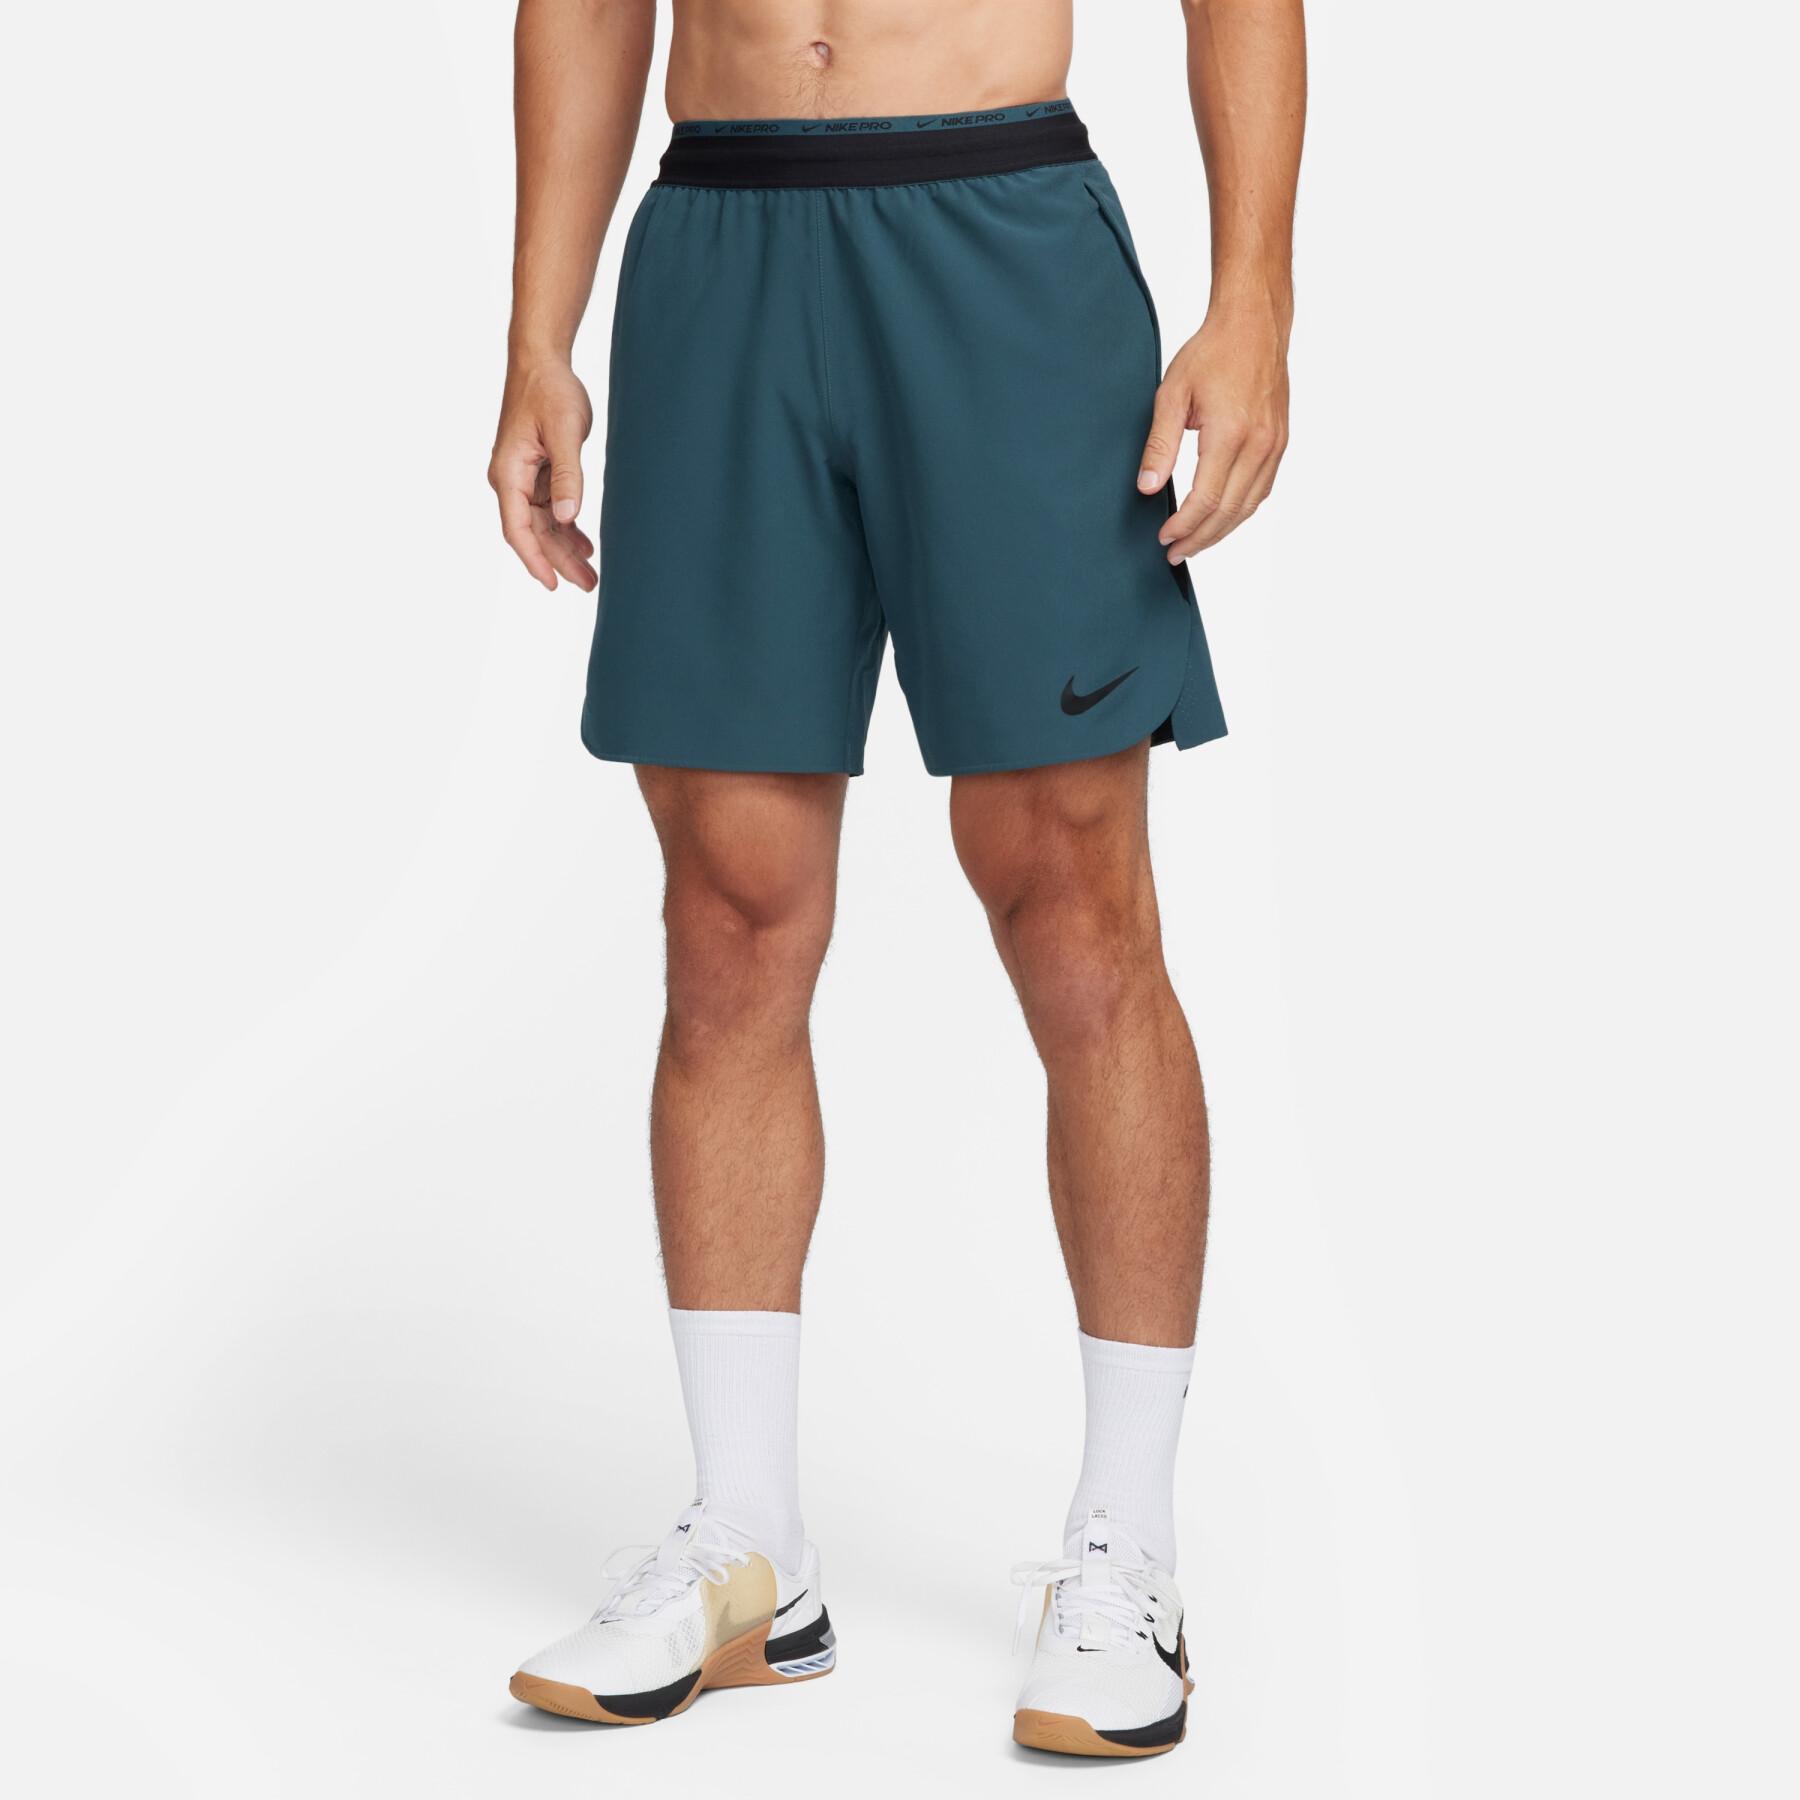 Pantaloncini Nike Dri-Fit Flex Rep Pro